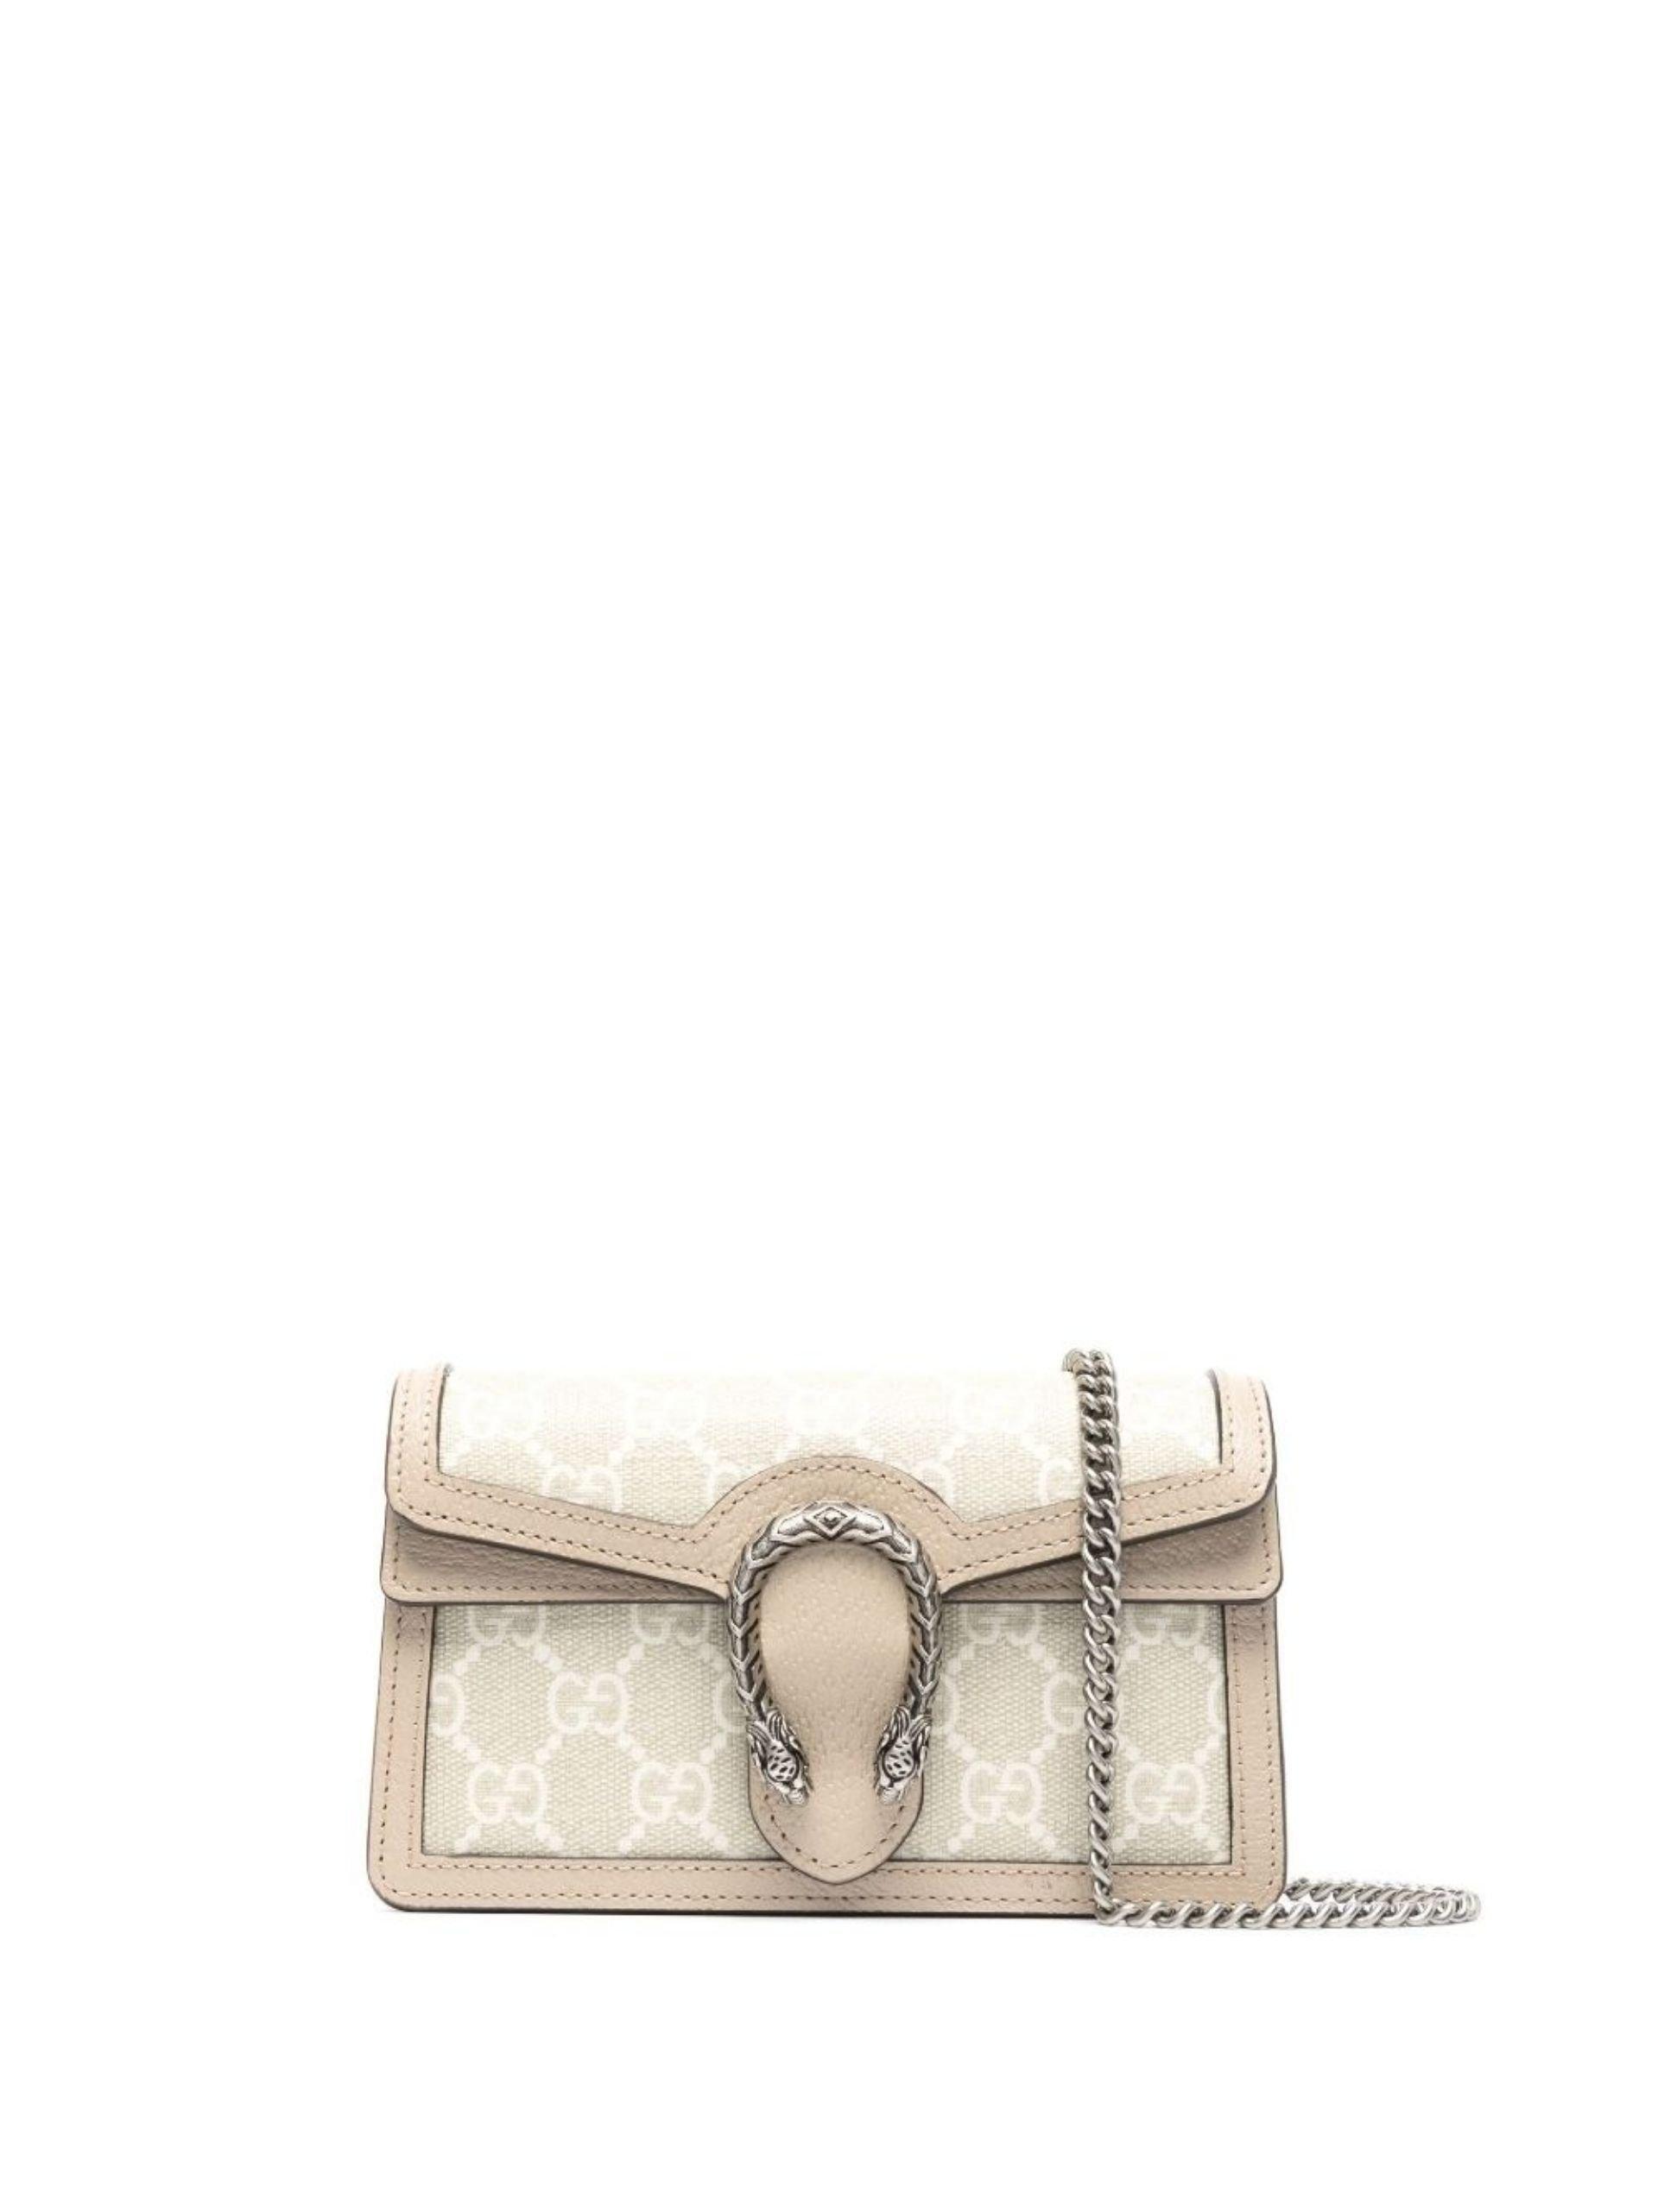 Dionysus GG super mini bag in beige and white GG Supreme